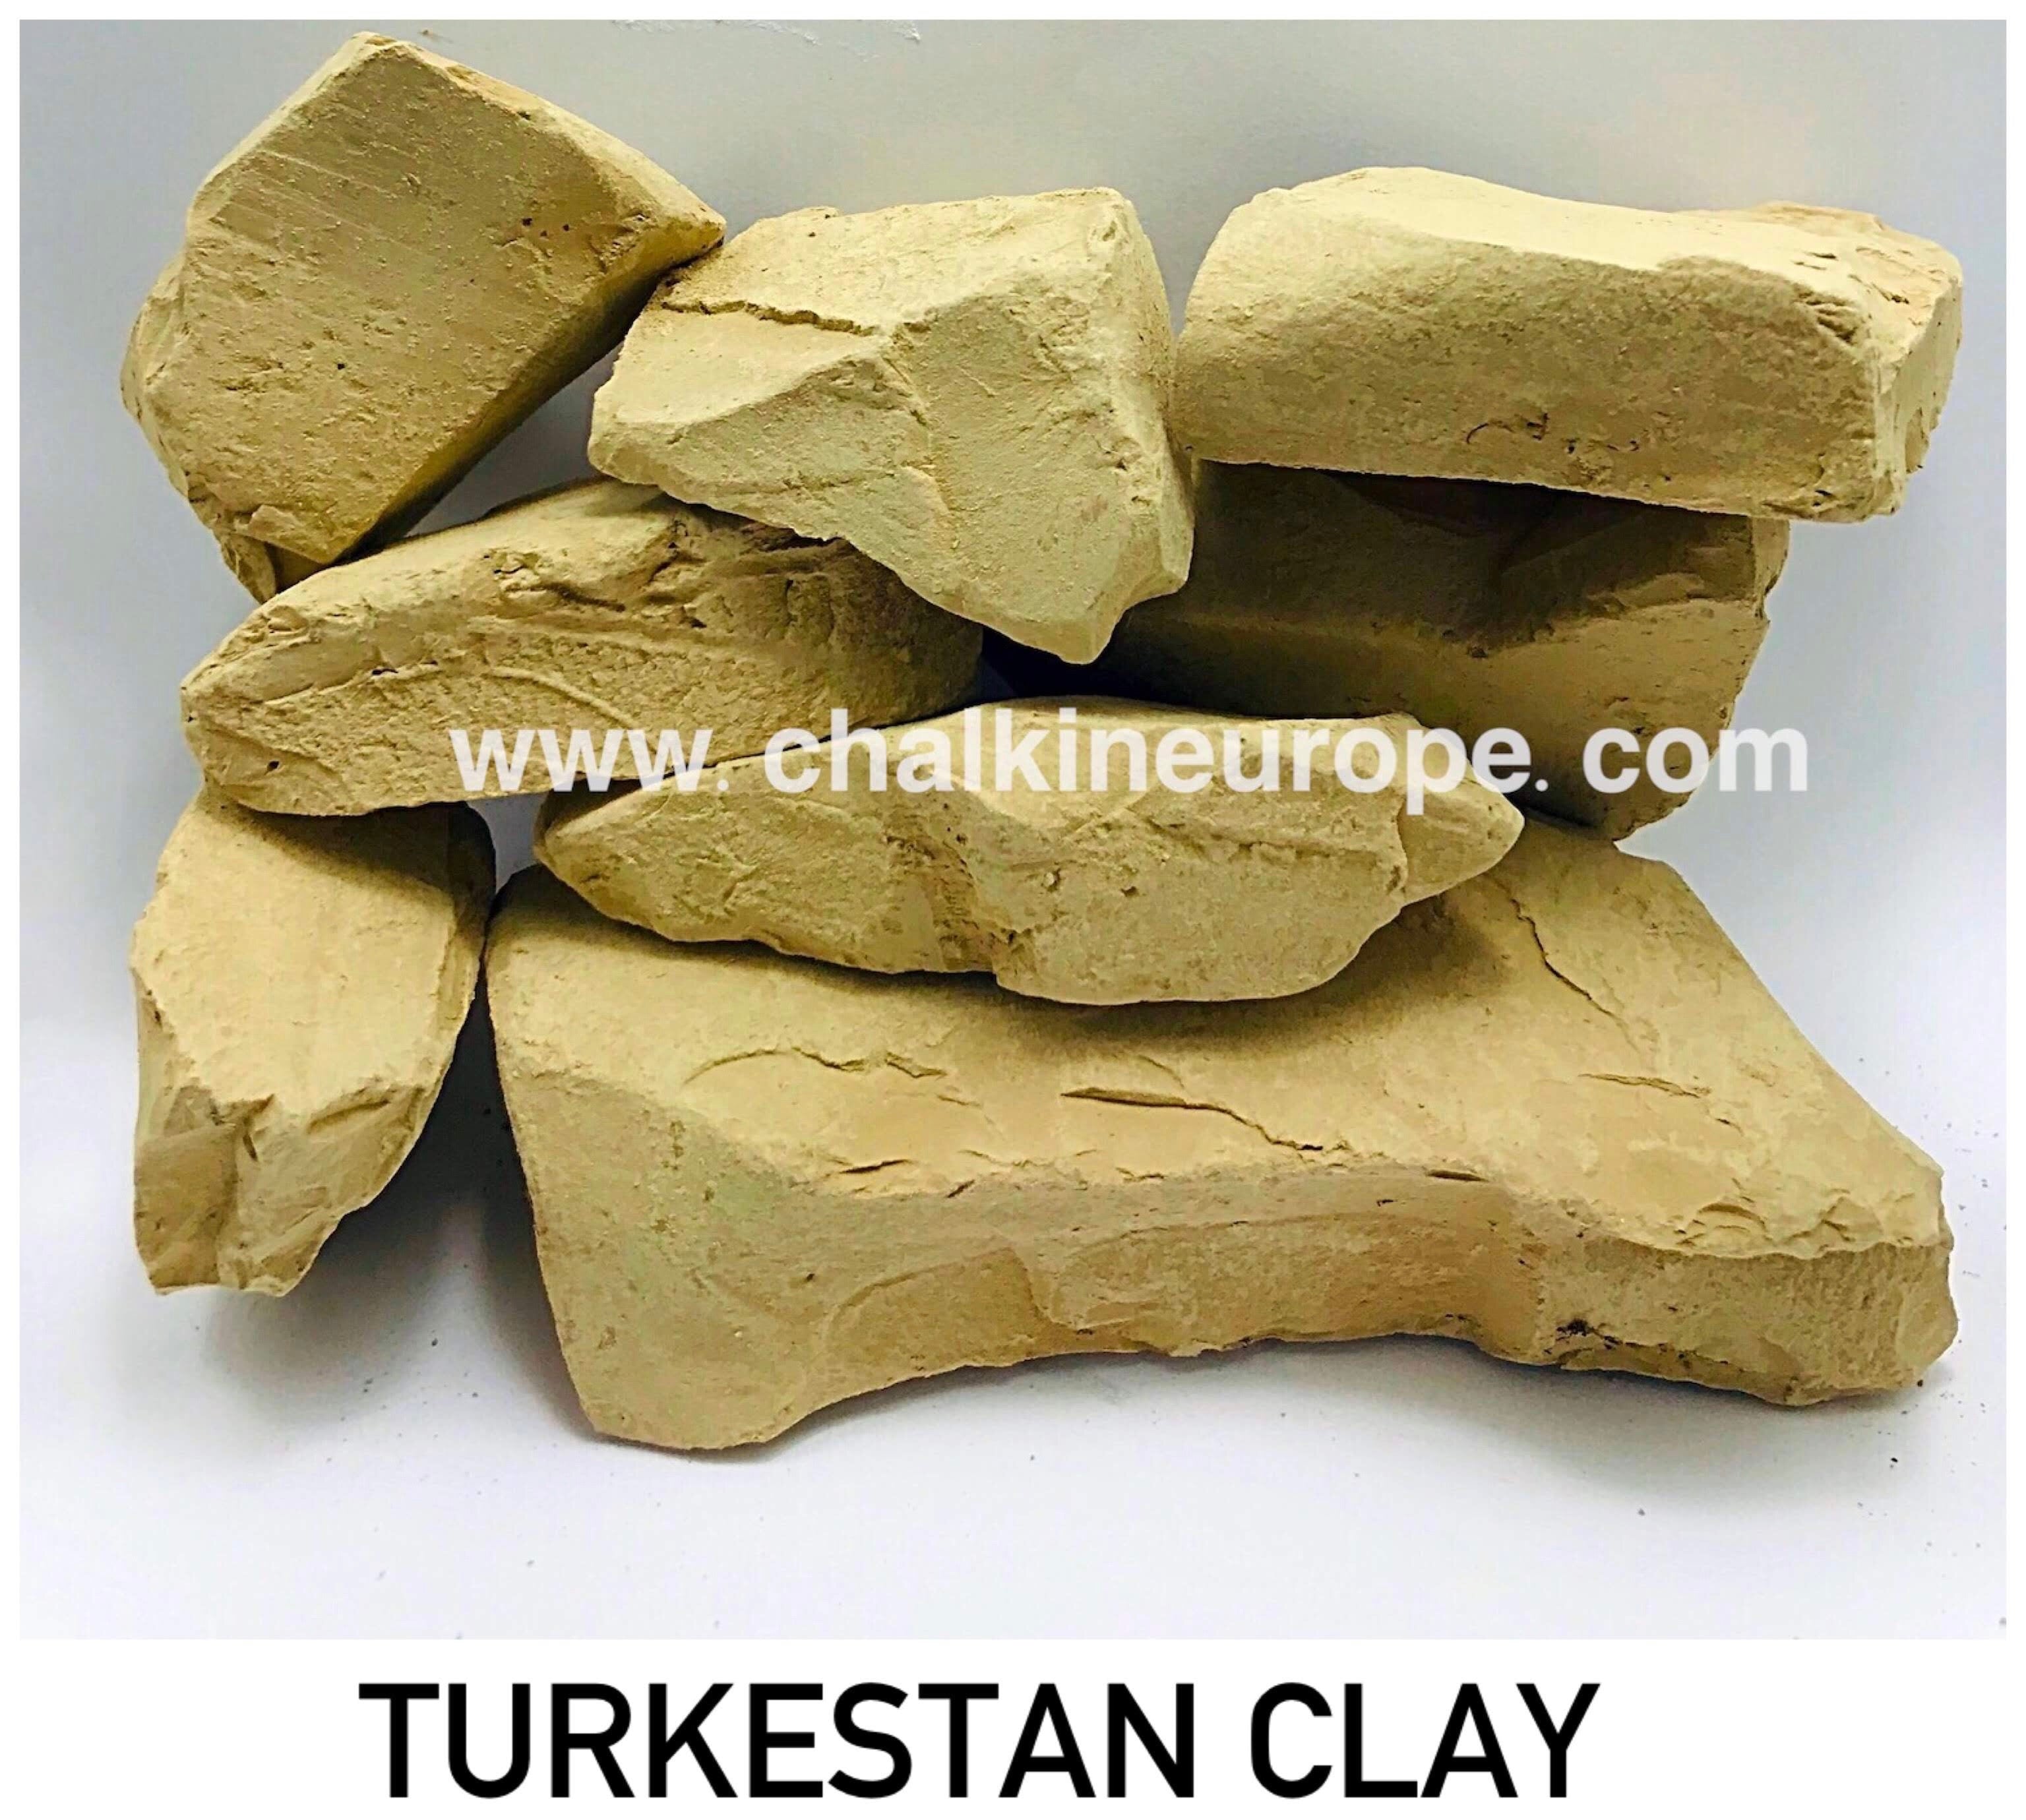 Turkestan Clay - Chalkineurope